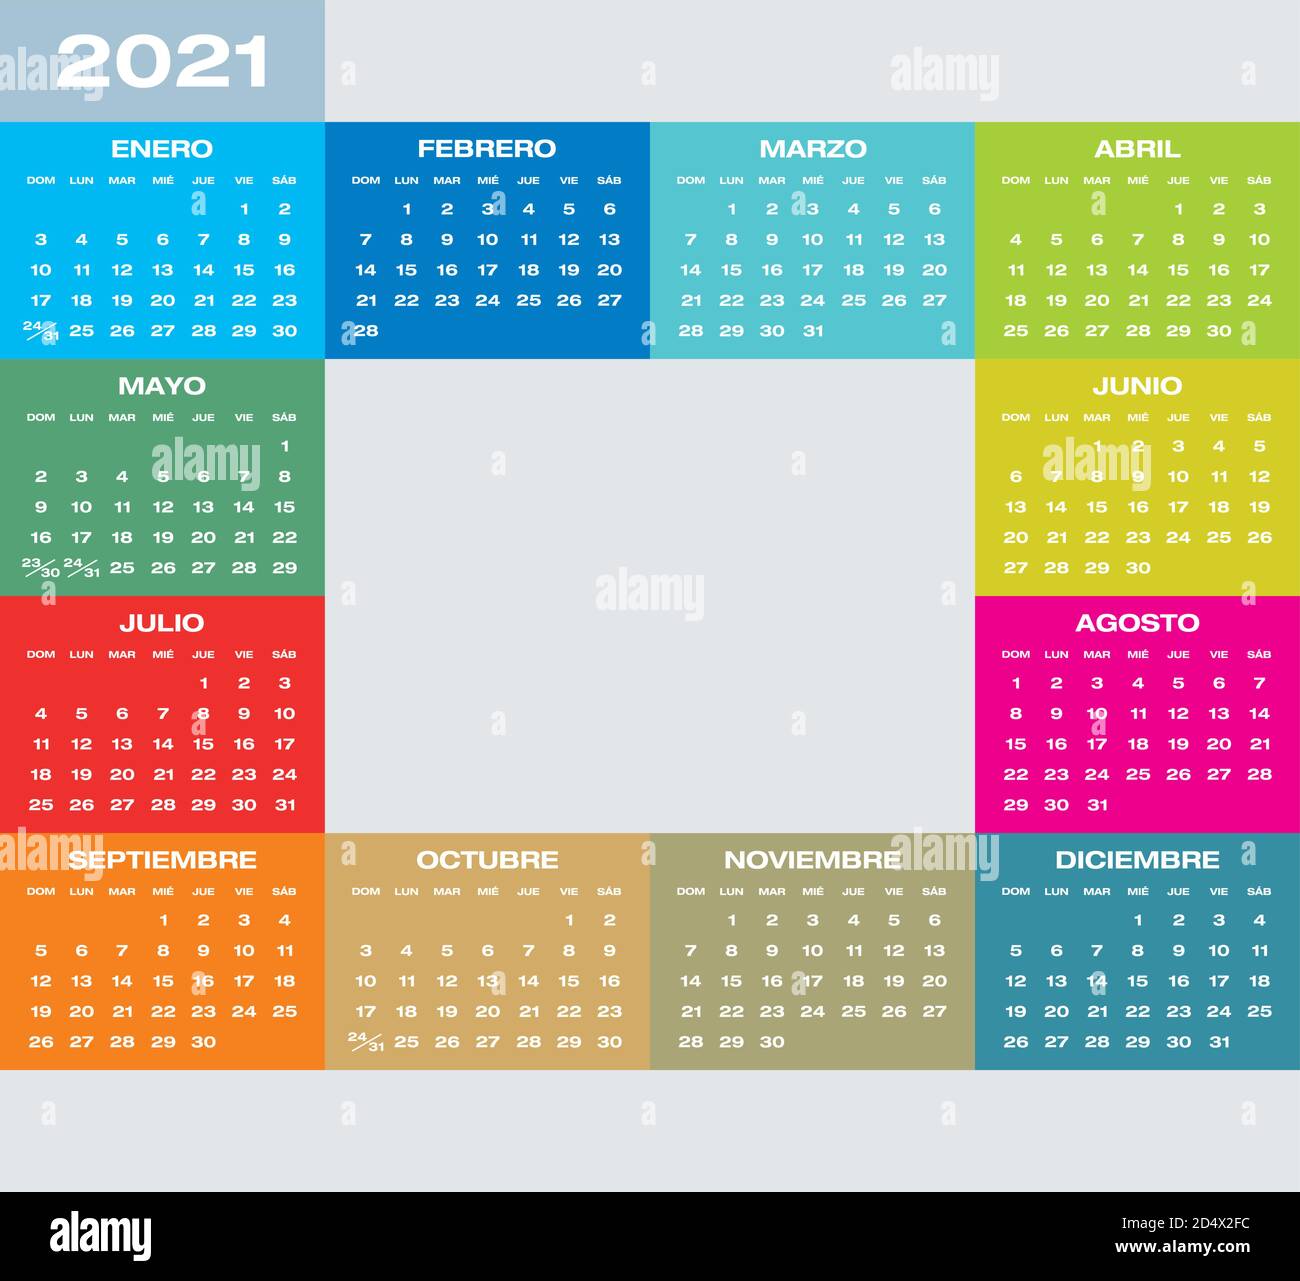 Calendario Colorido Para El Año 2021 En Español Formato Vectorial